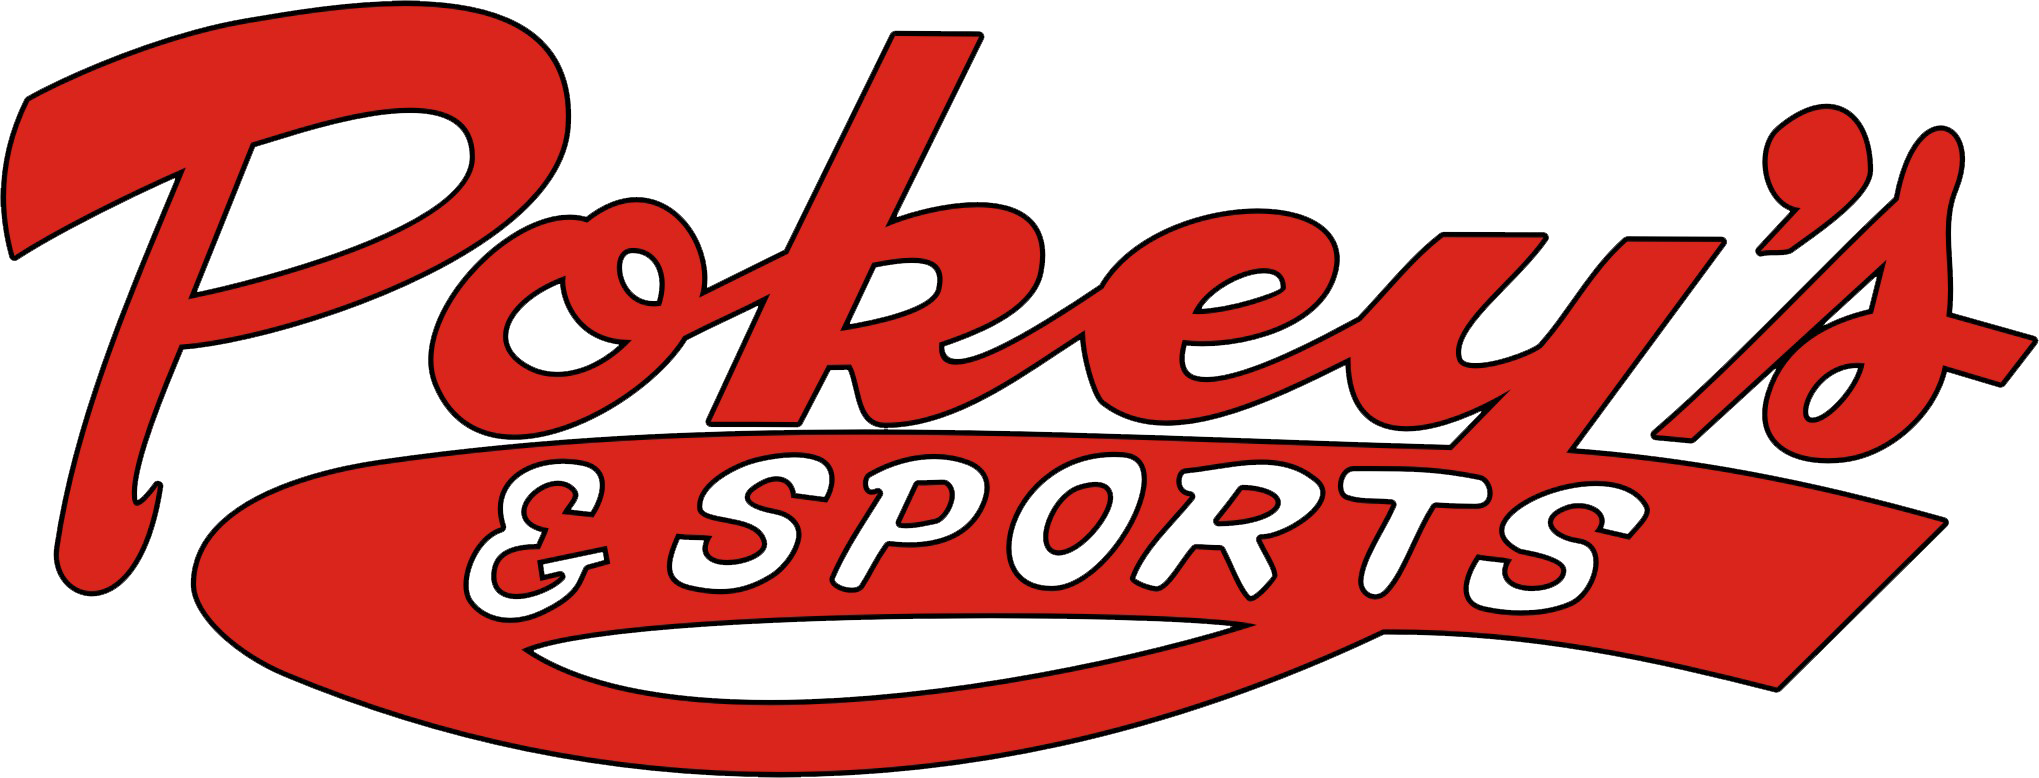 Pokey's & Sports